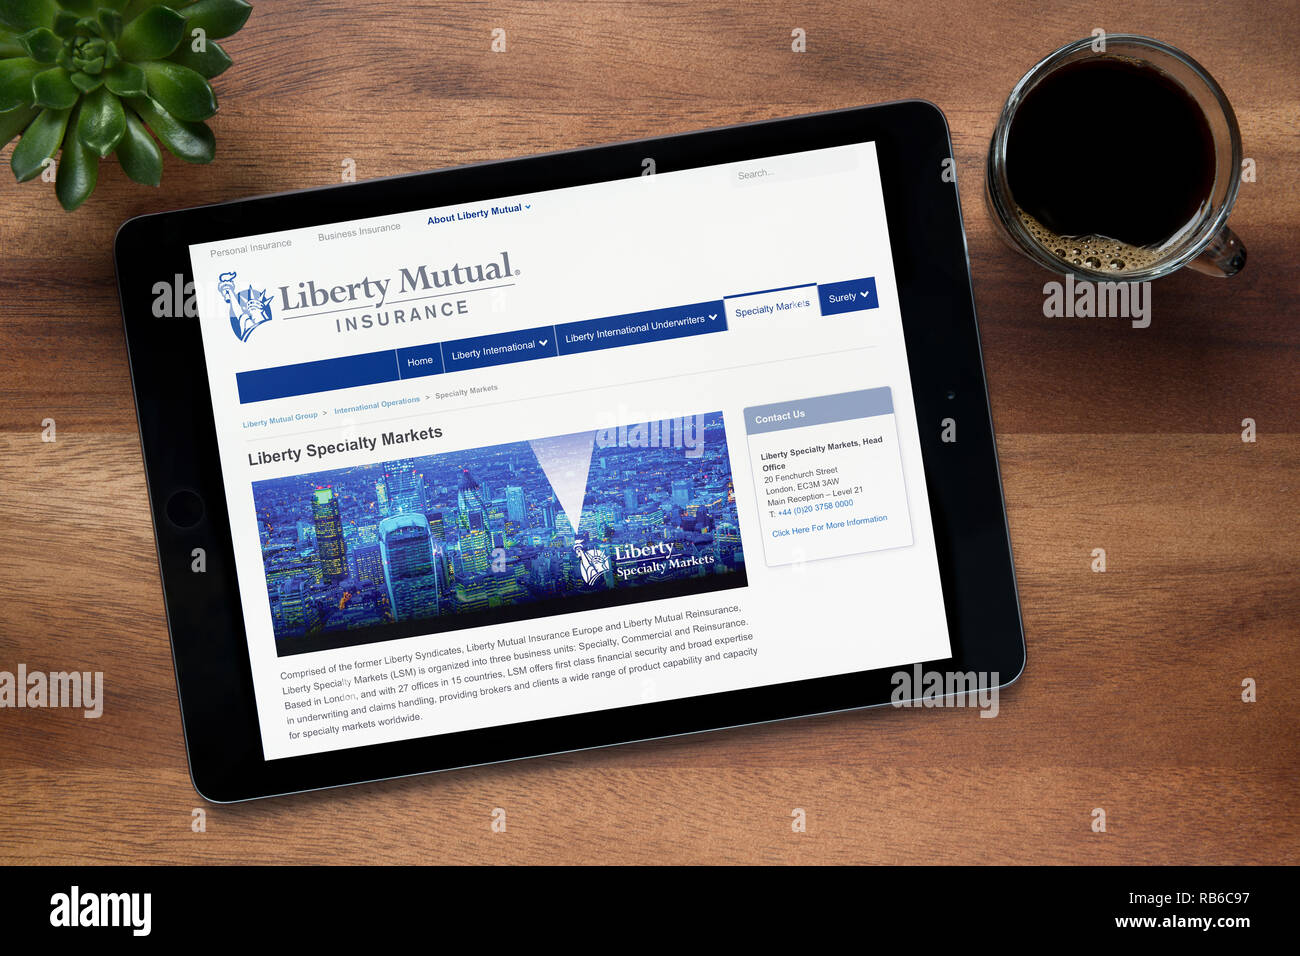 El sitio web de Liberty Mutual Insurance es visto en un iPad descansando sobre una tabla de madera (uso Editorial solamente). Foto de stock